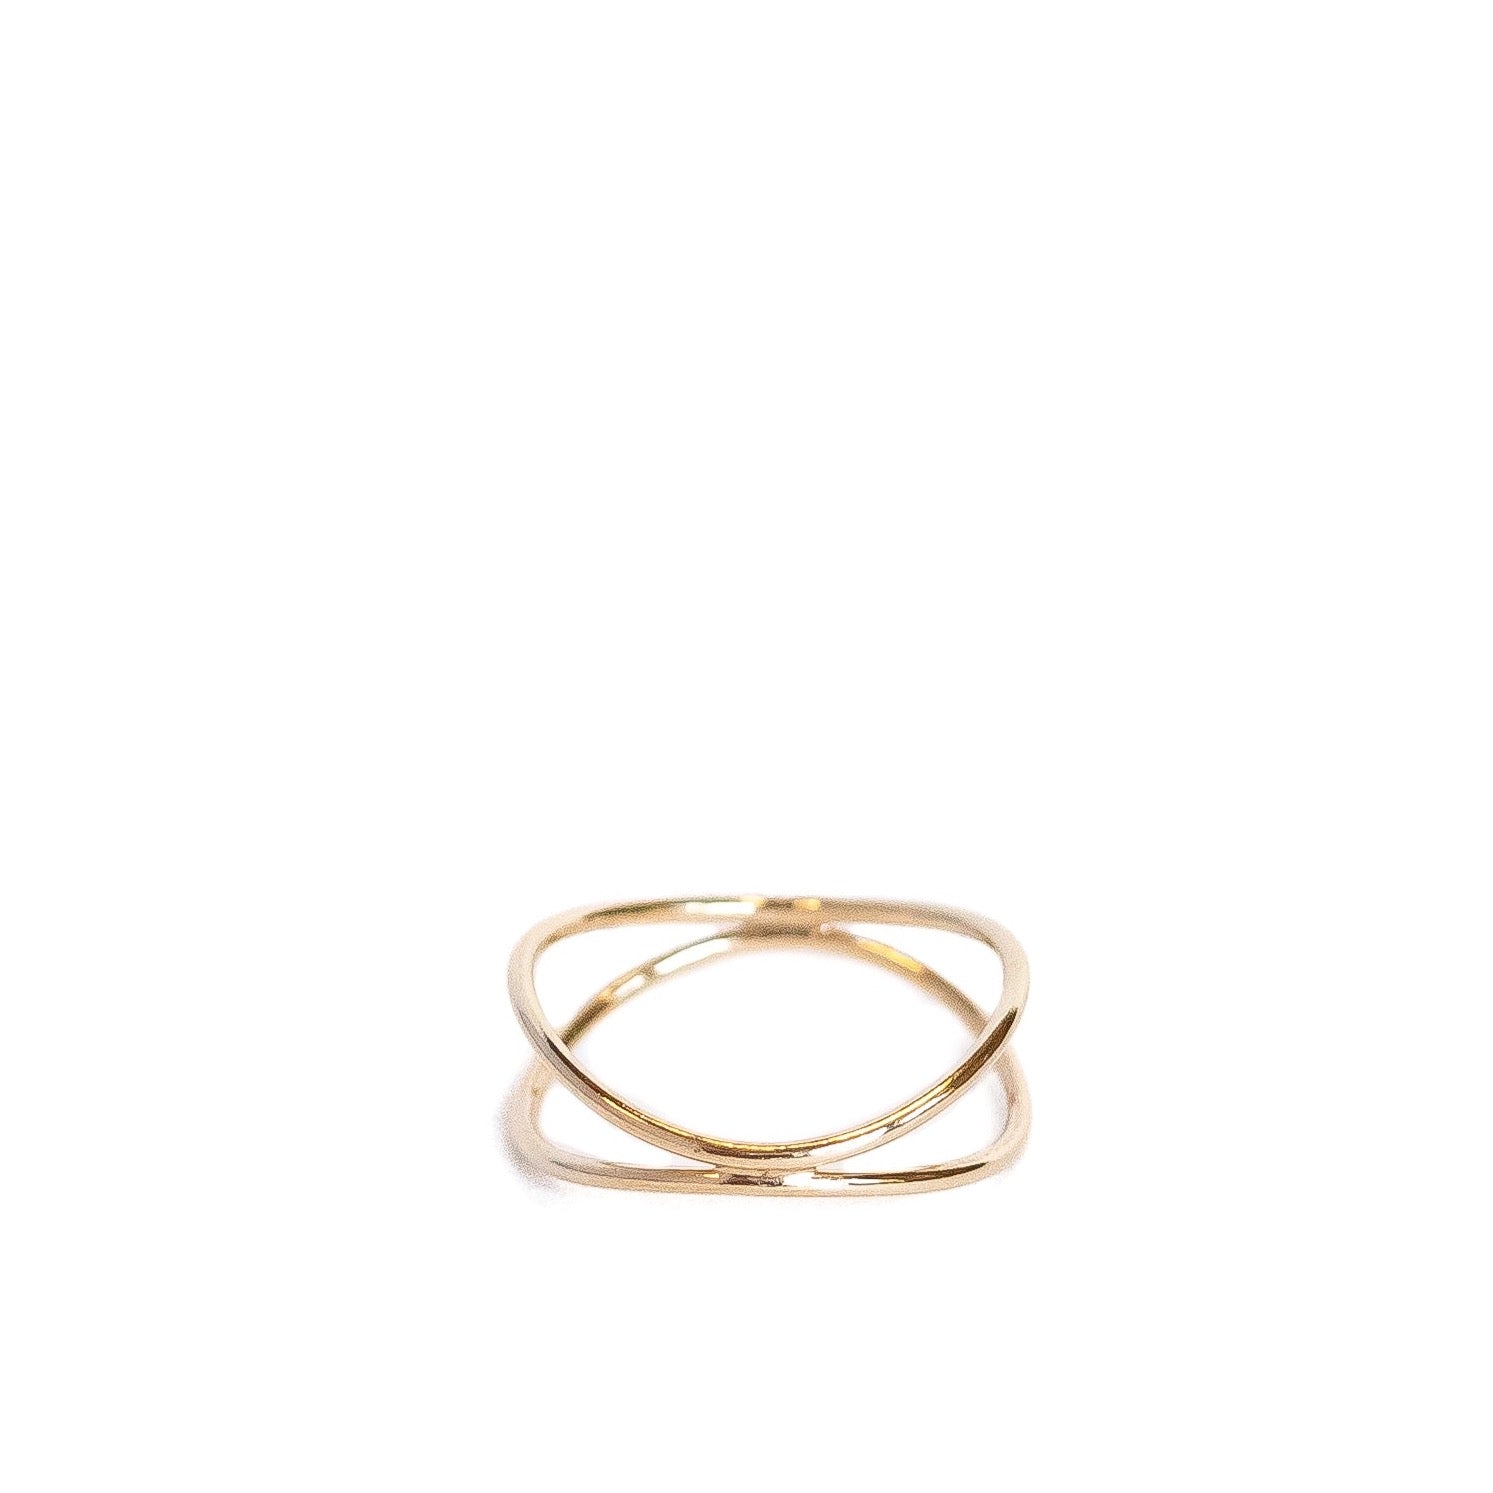 Gold-filled 1millimeter Ribbon Finger Ring. 